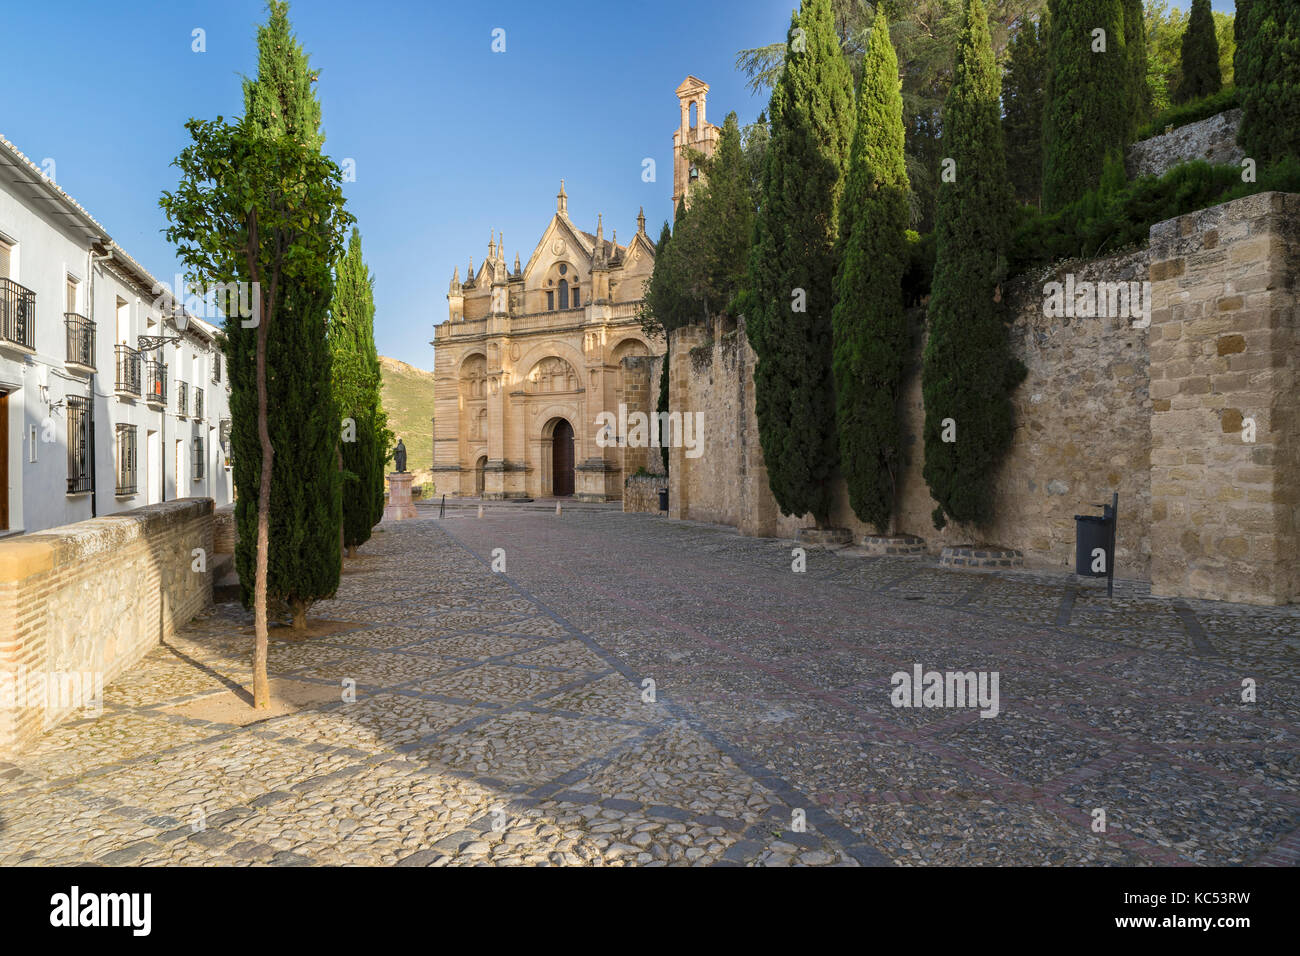 Real Colegiata Santa Maria, Antequera, province of Malaga, Andalusia, Spain Stock Photo